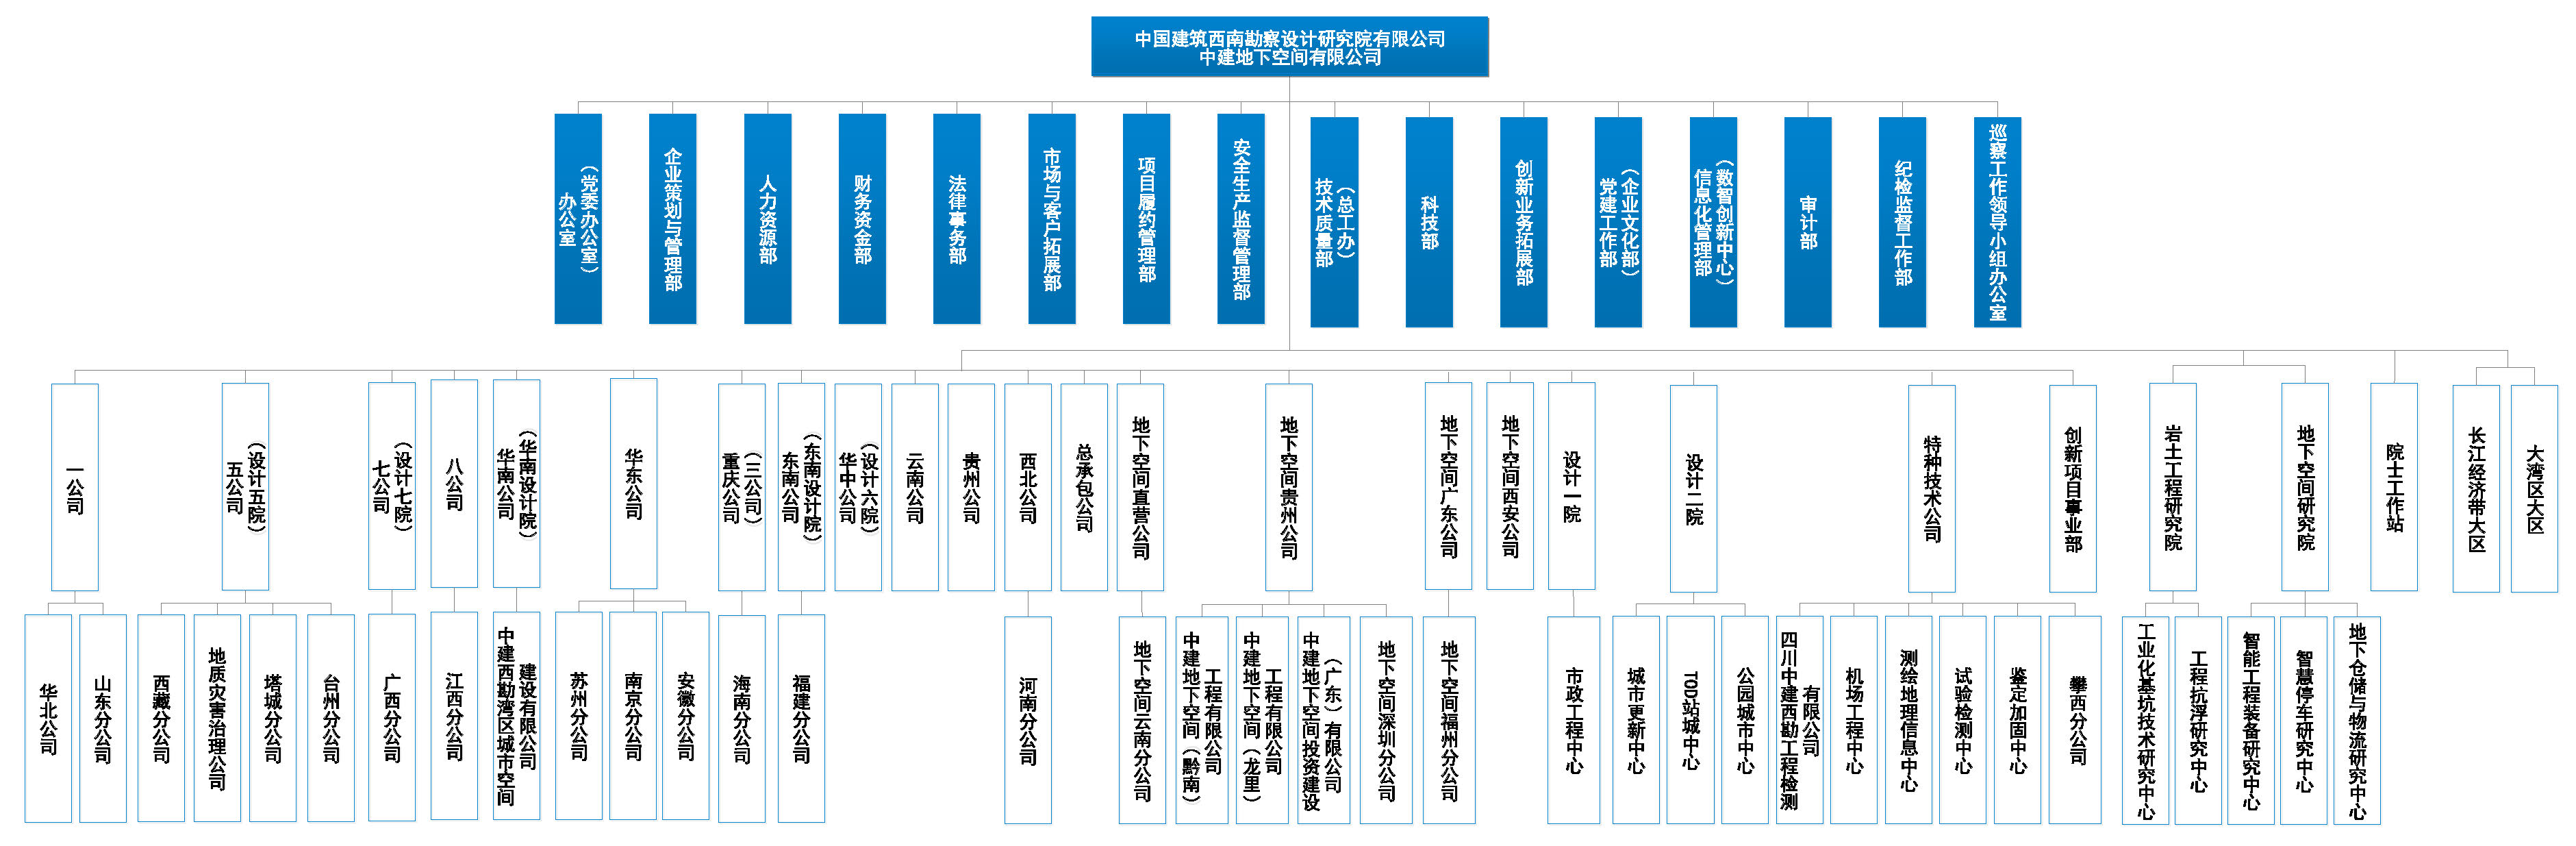 中建西勘院组织机构图20220922(广东投资公司调整代管关系）.jpg